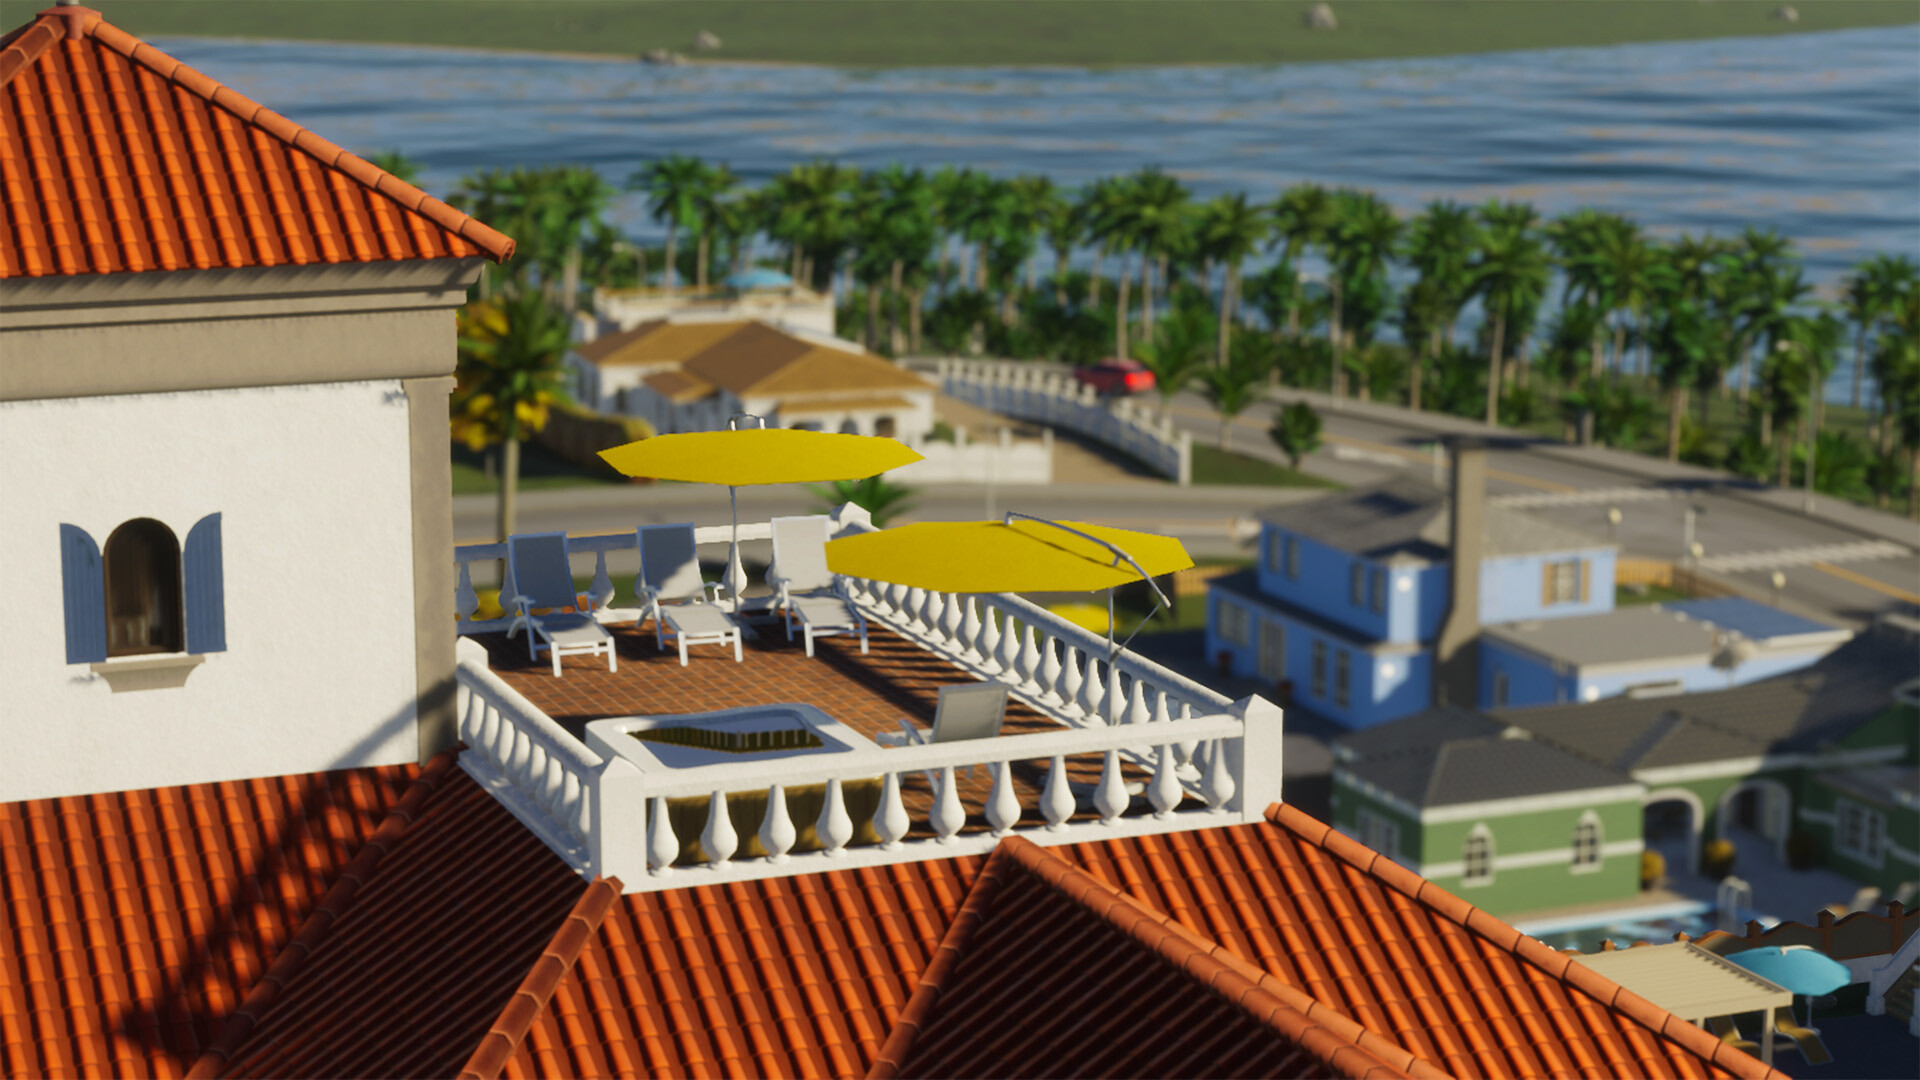 Urbanistyczna strategia Cities: Skylines 2 otrzymała zestaw obiektów plażowych i narzędzi w grze do modyfikacji